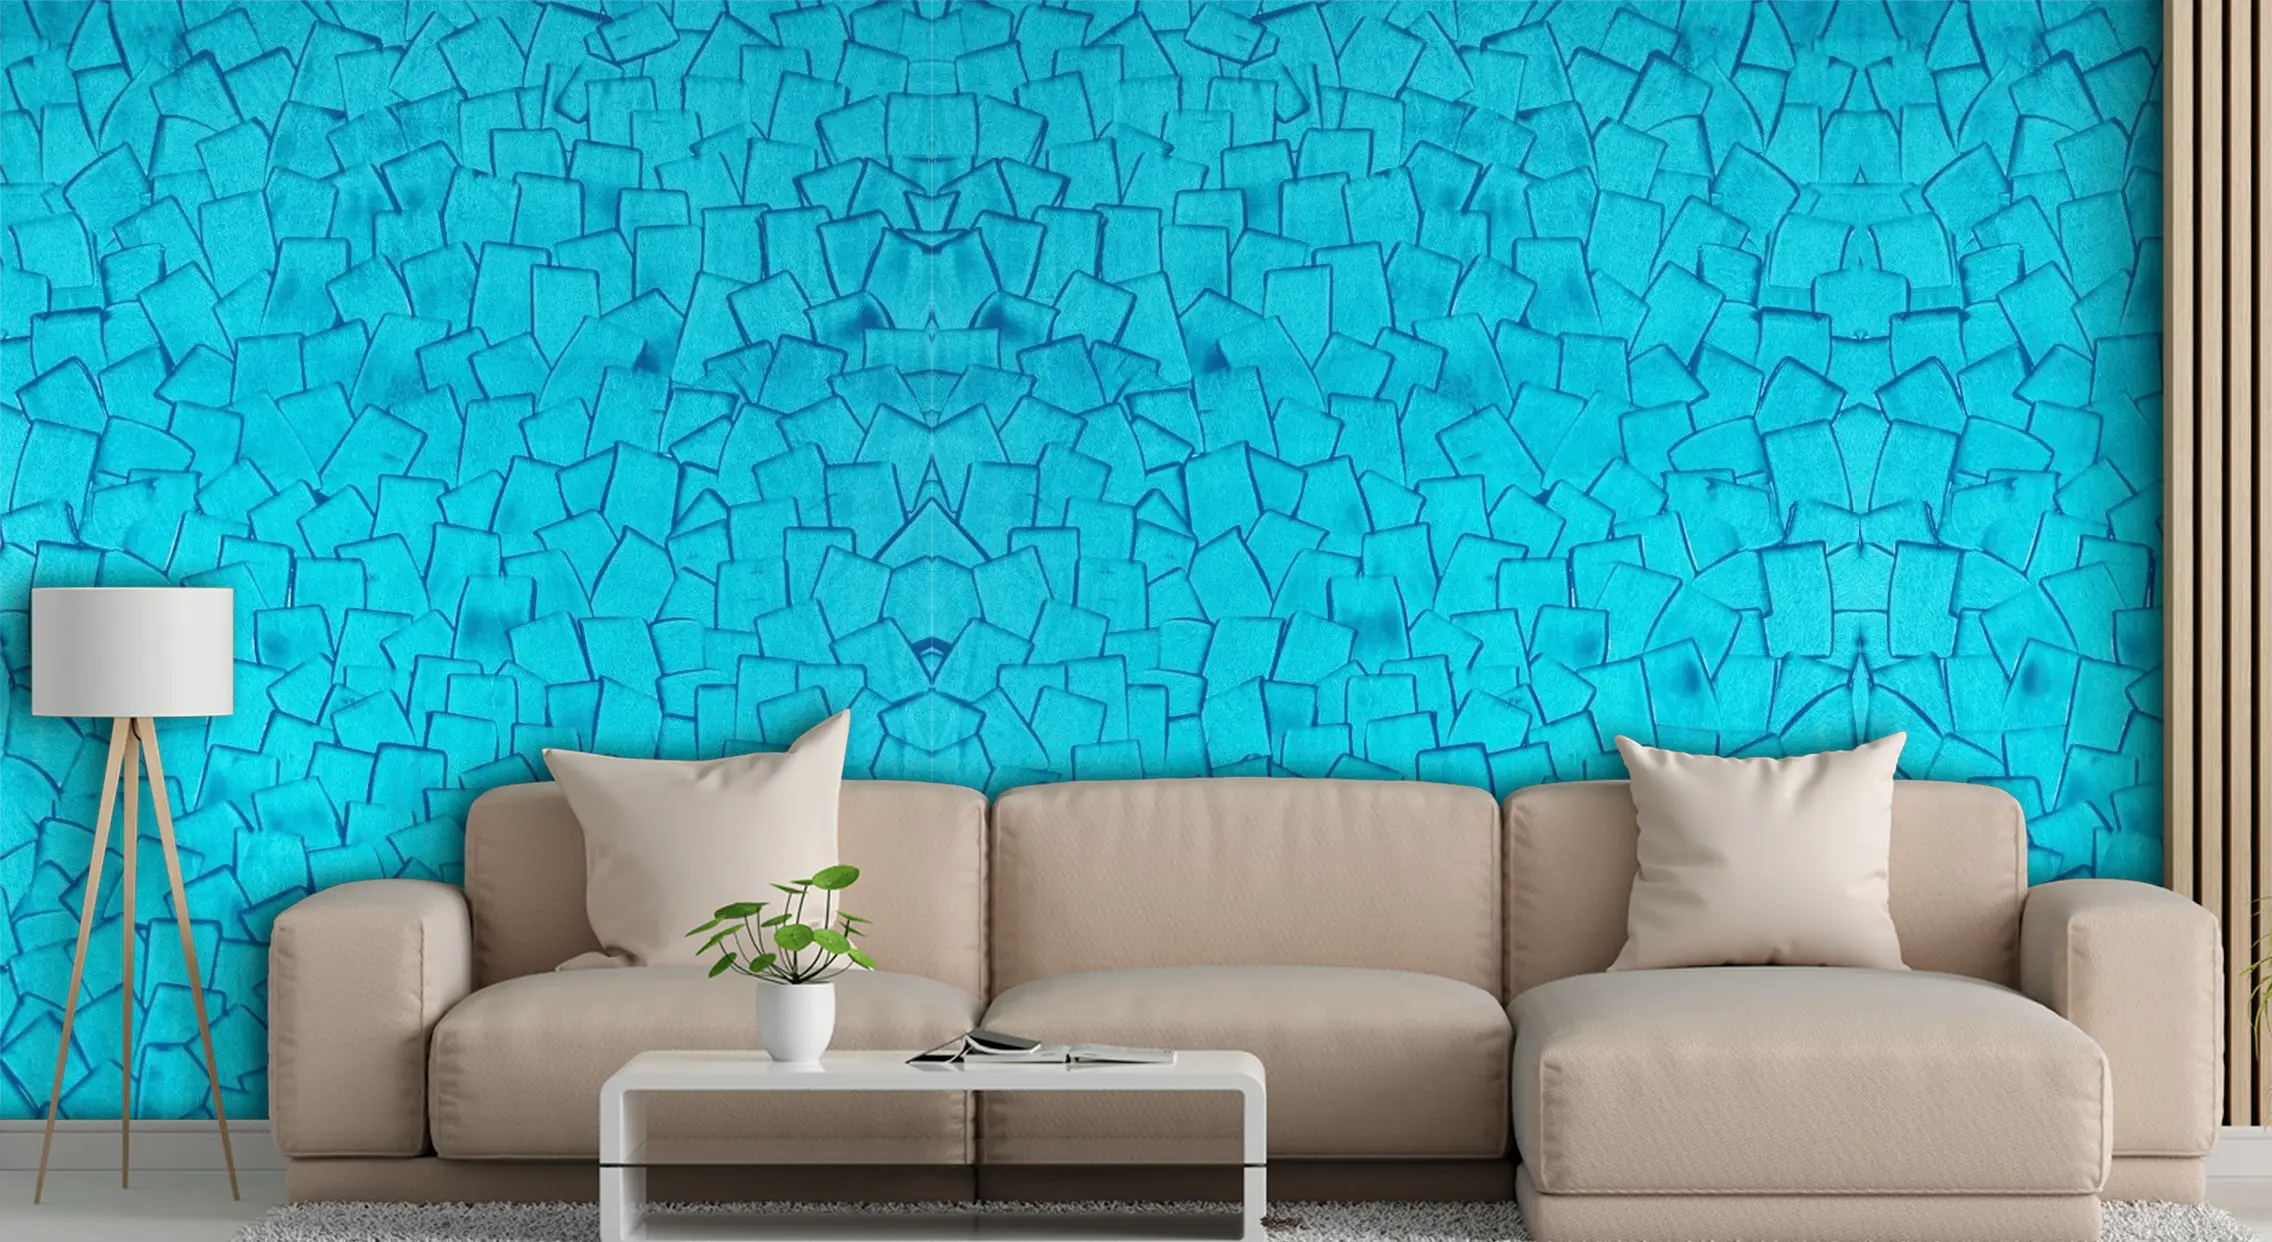 Wall Texture Paint Designs for Modern Interior Walls | Aapkapainter